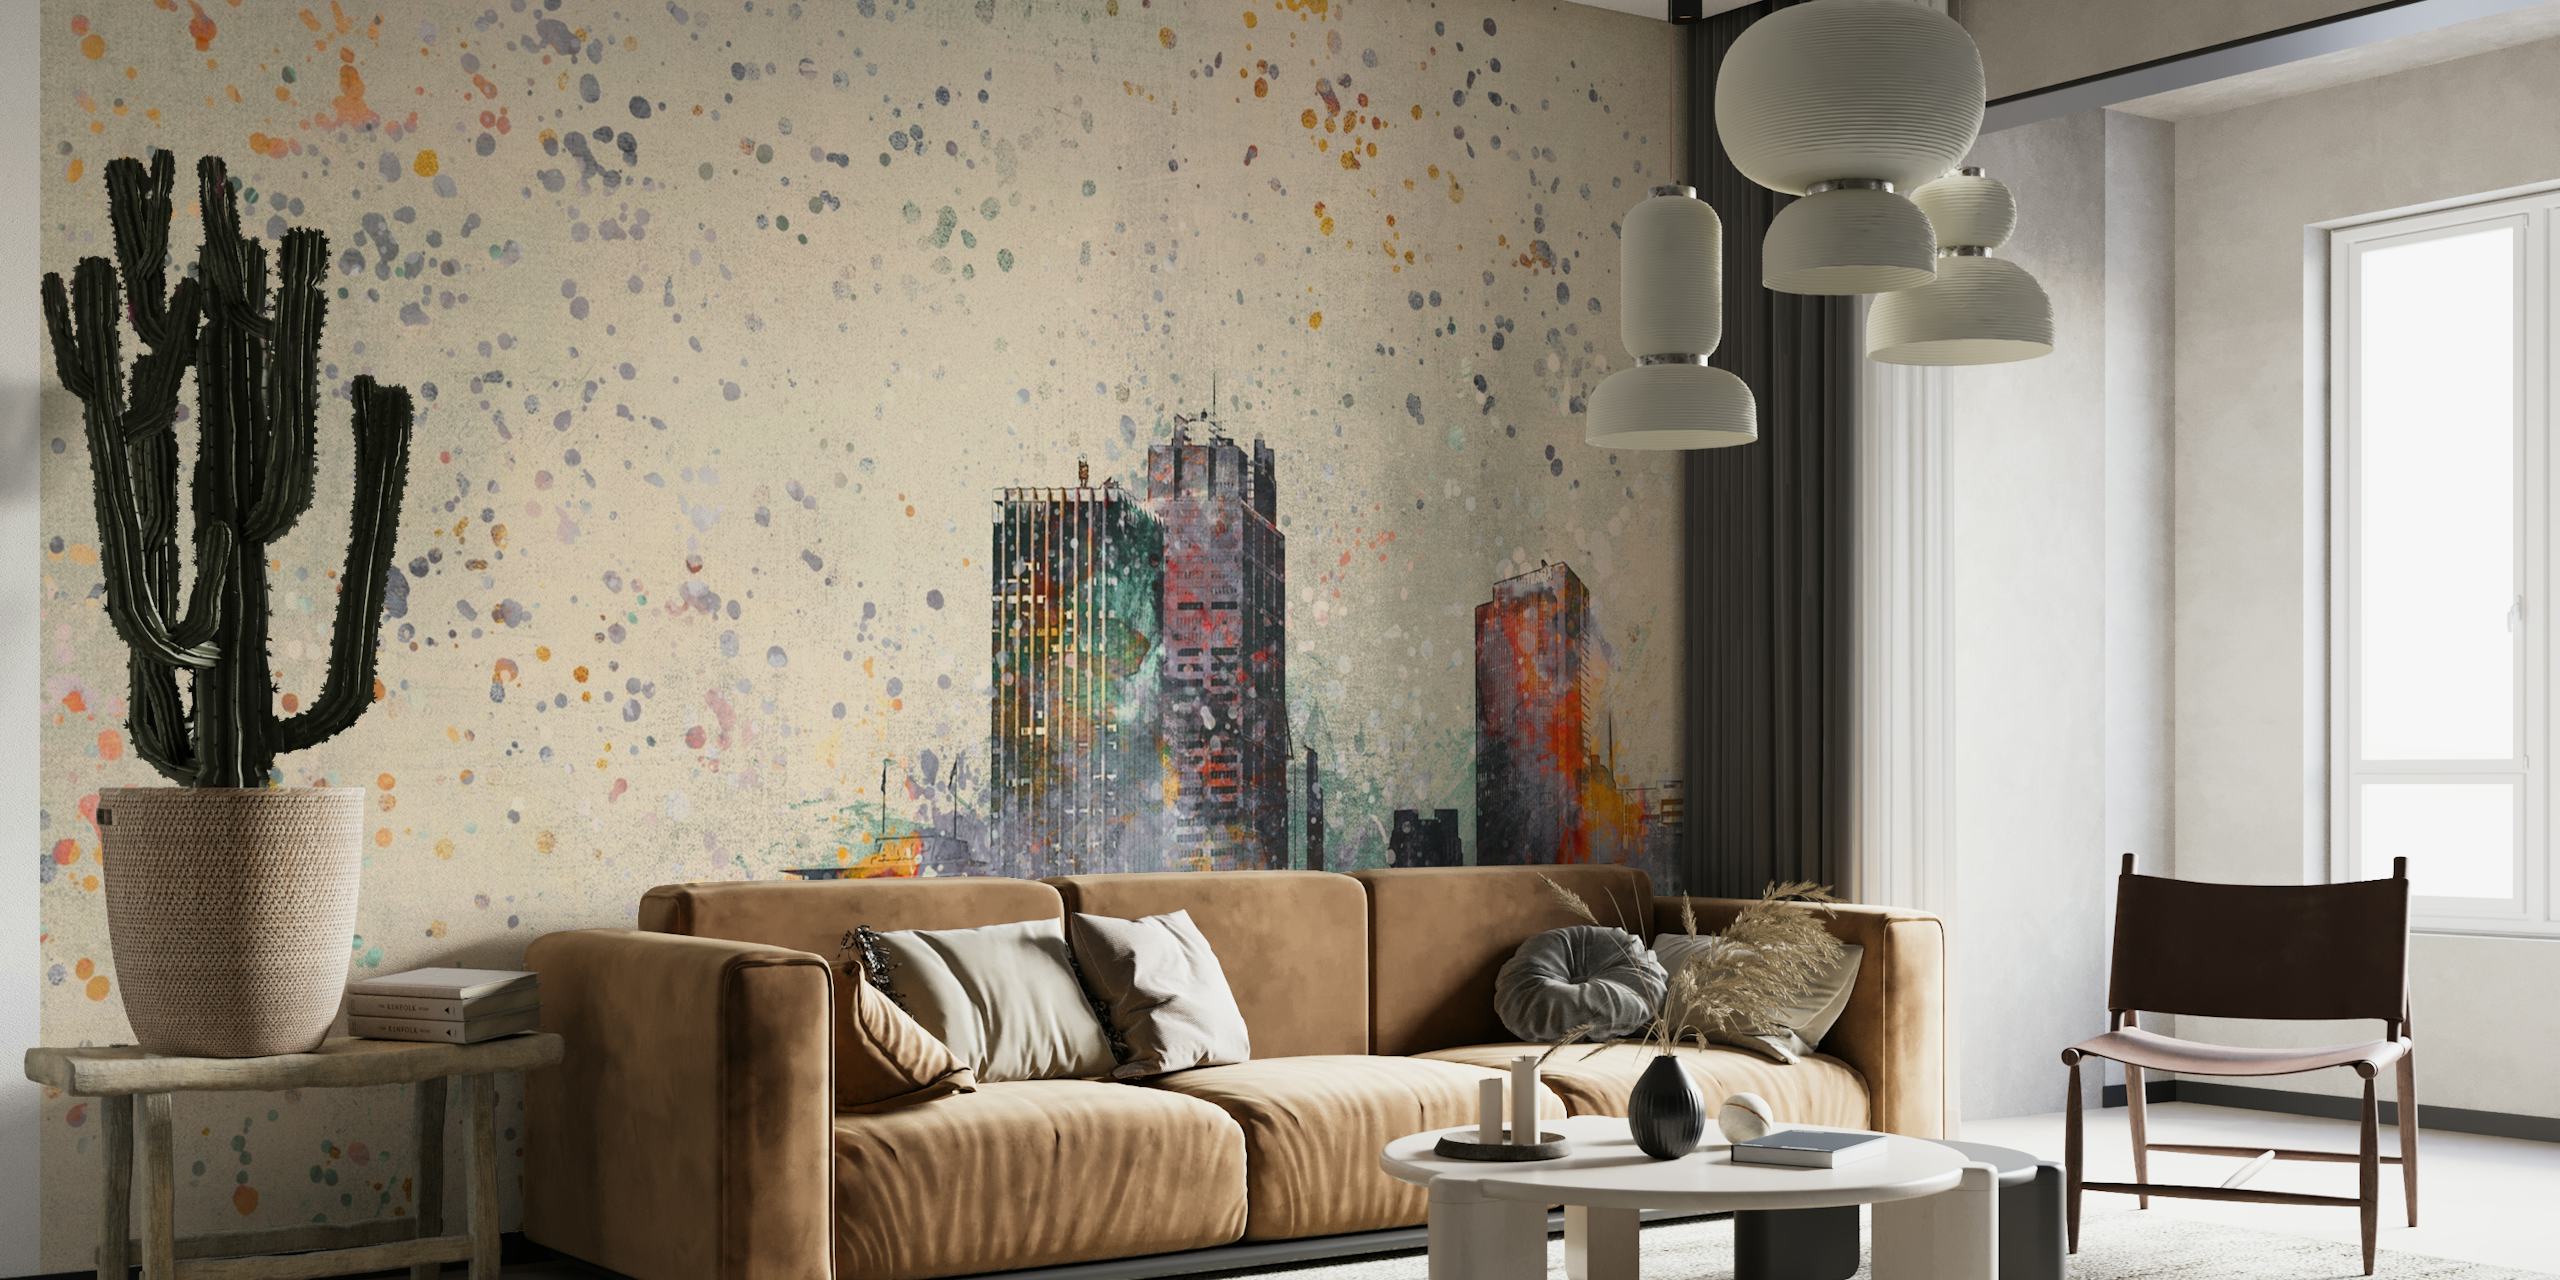 Abstrakt vægmaleri i bybilledet med levende farver og sprøjtemalingseffekt